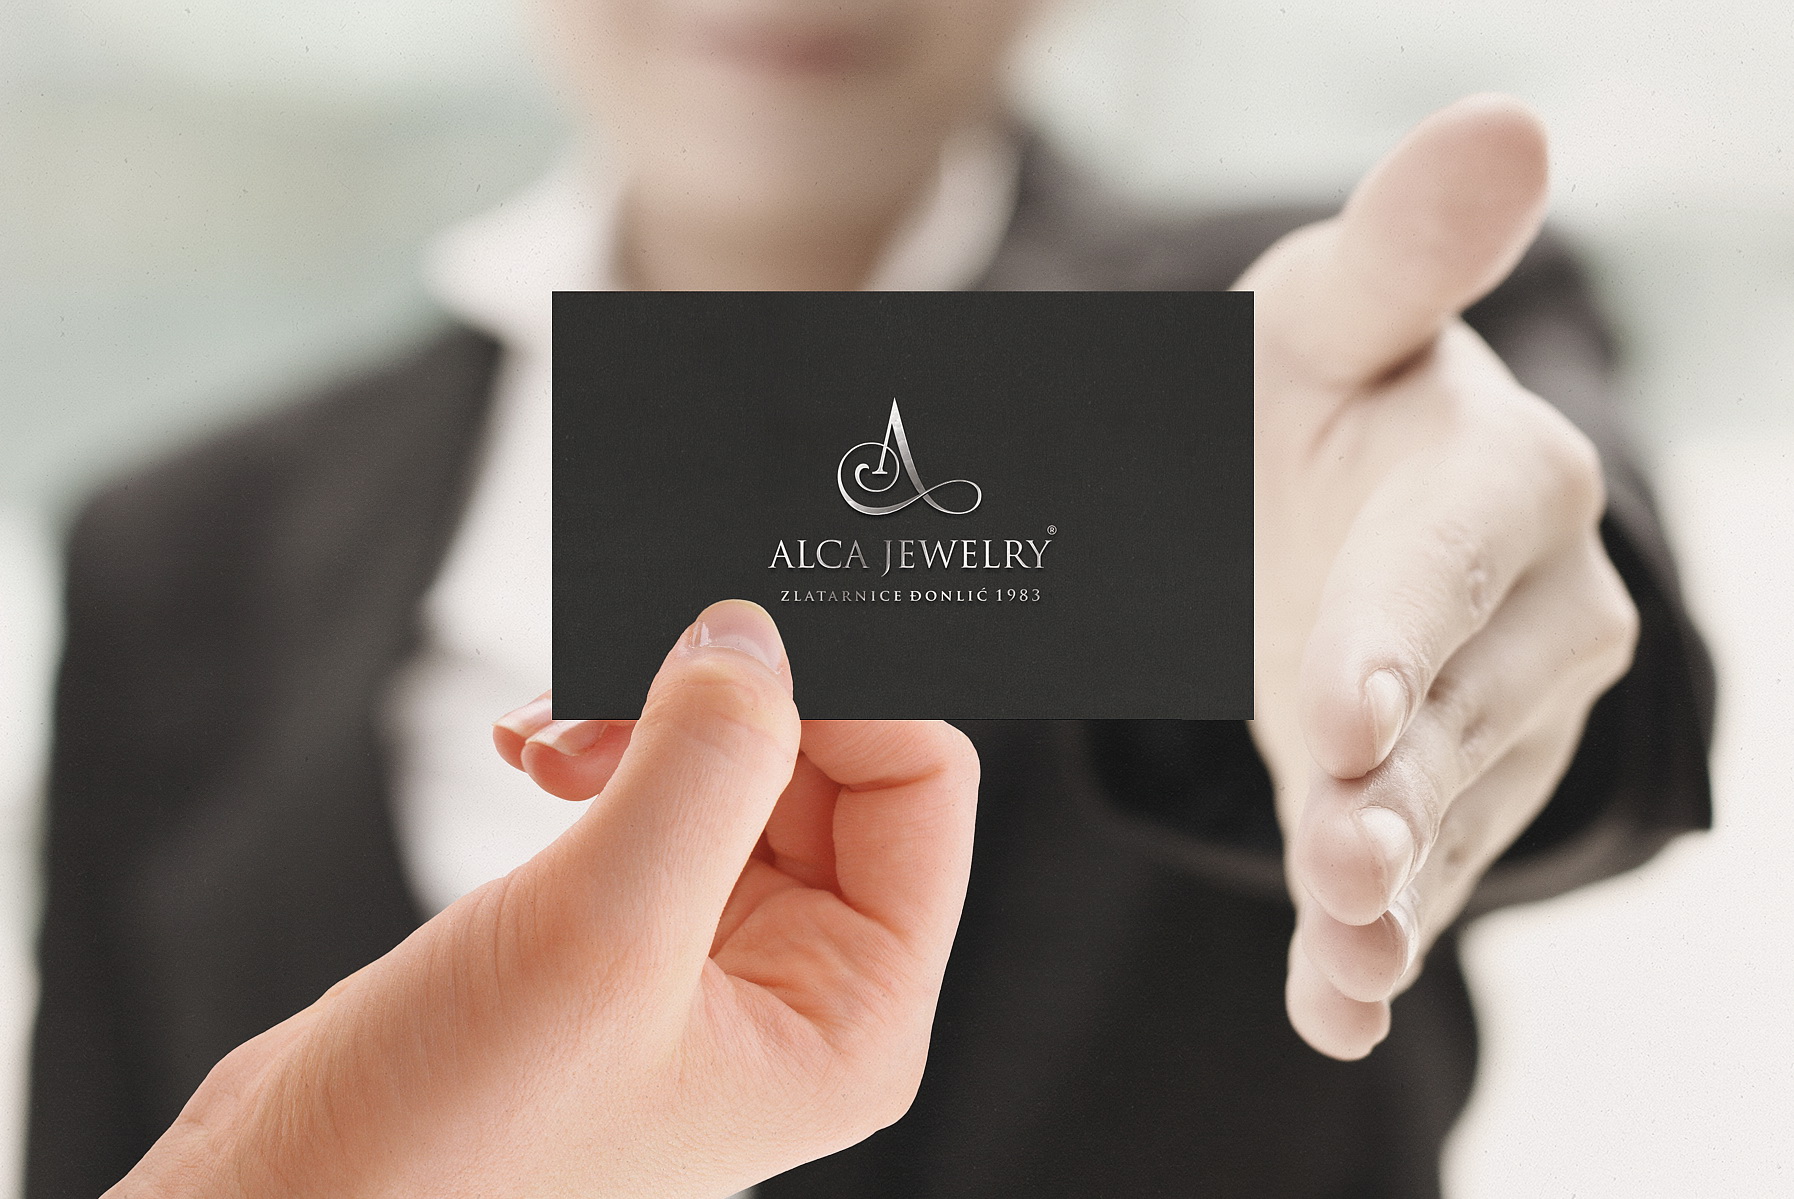 Alca Jewellery